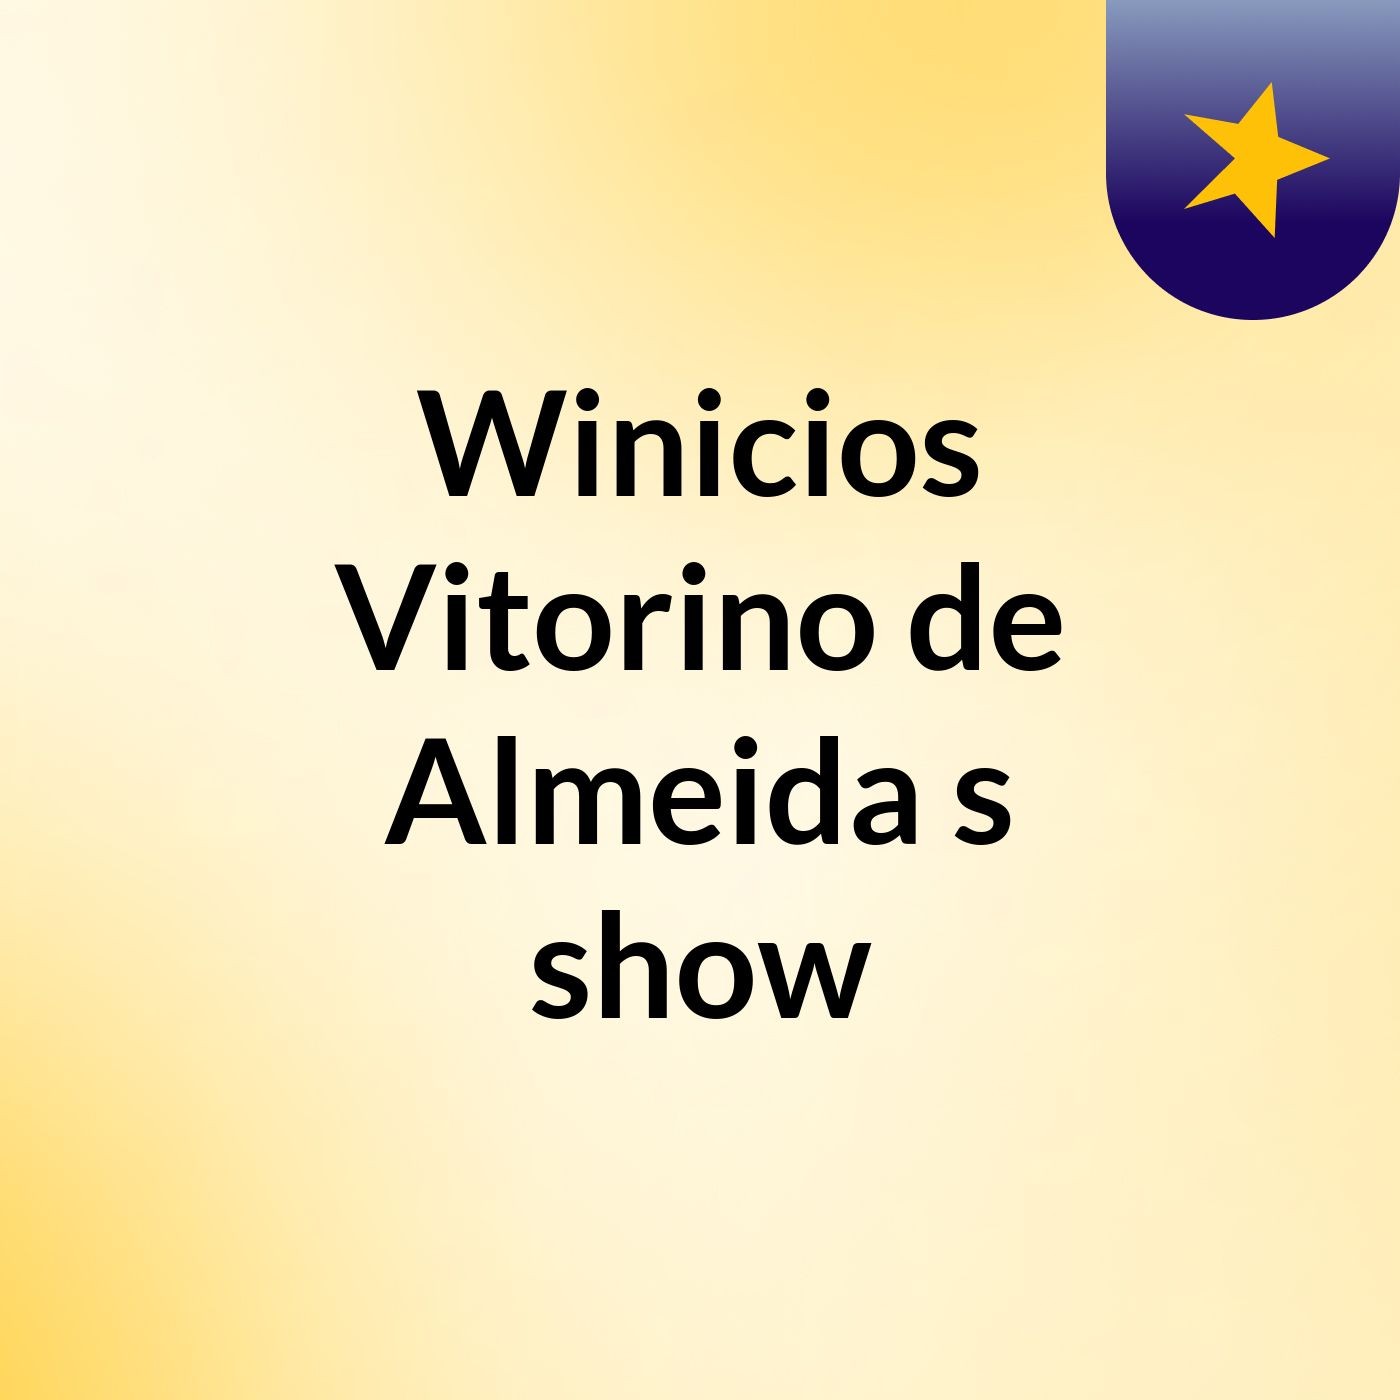 Winicios Vitorino de Almeida's show